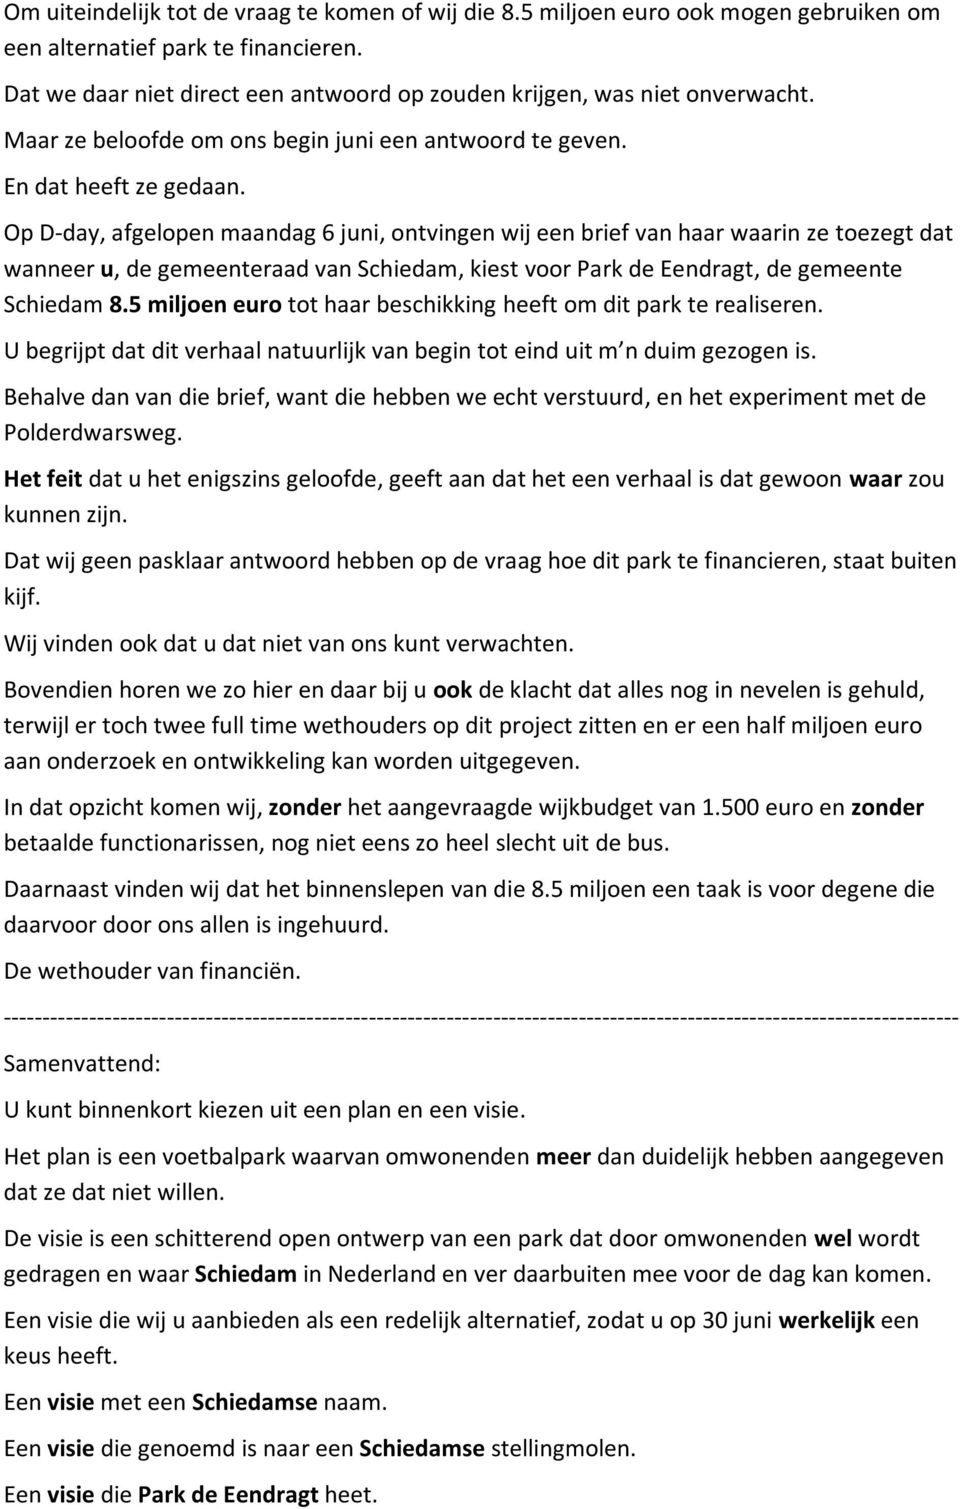 Op D-day, afgelopen maandag 6 juni, ontvingen wij een brief van haar waarin ze toezegt dat wanneer u, de gemeenteraad van Schiedam, kiest voor Park de Eendragt, de gemeente Schiedam 8.